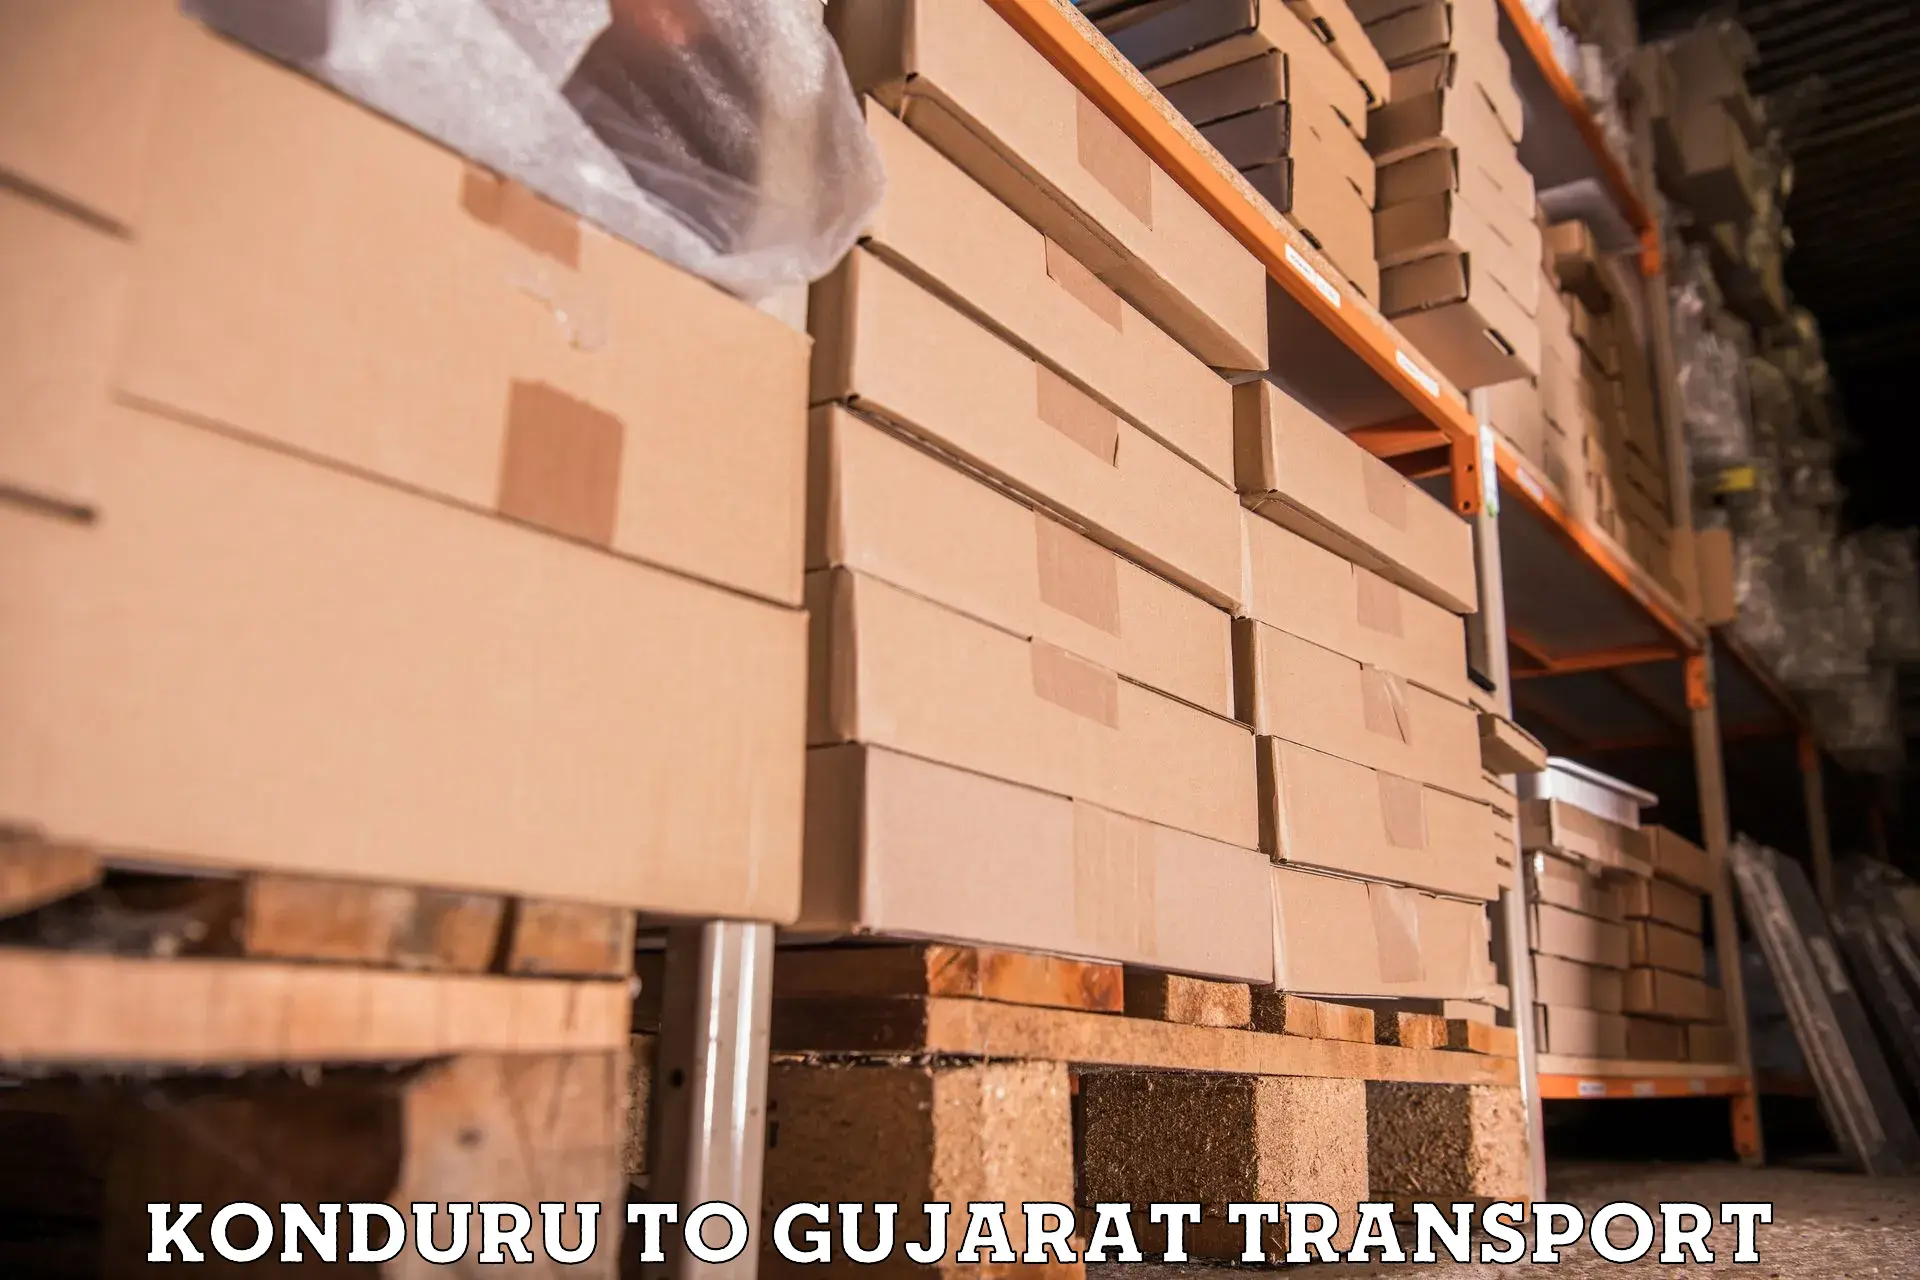 Furniture transport service Konduru to Vadodara